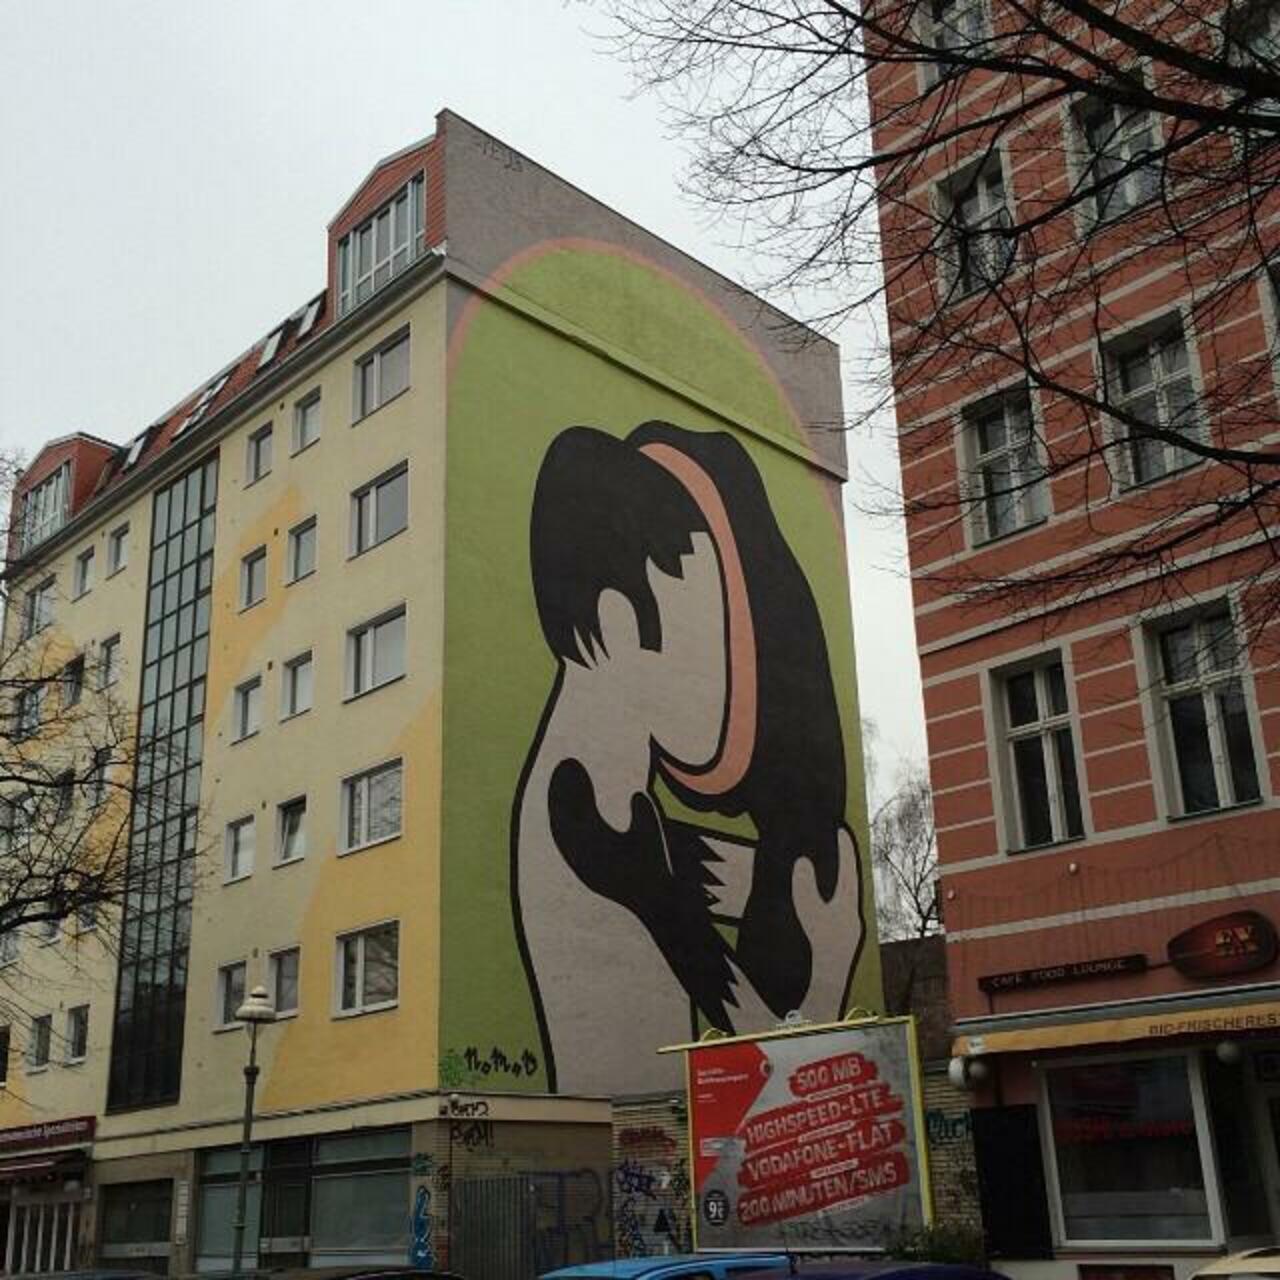 RT @StArtEverywhere: #Berlin #Allemagne #streetart #street #art #urbanart #urbantag #graffiti by becombegeek http://t.co/lxtPXmFmu1